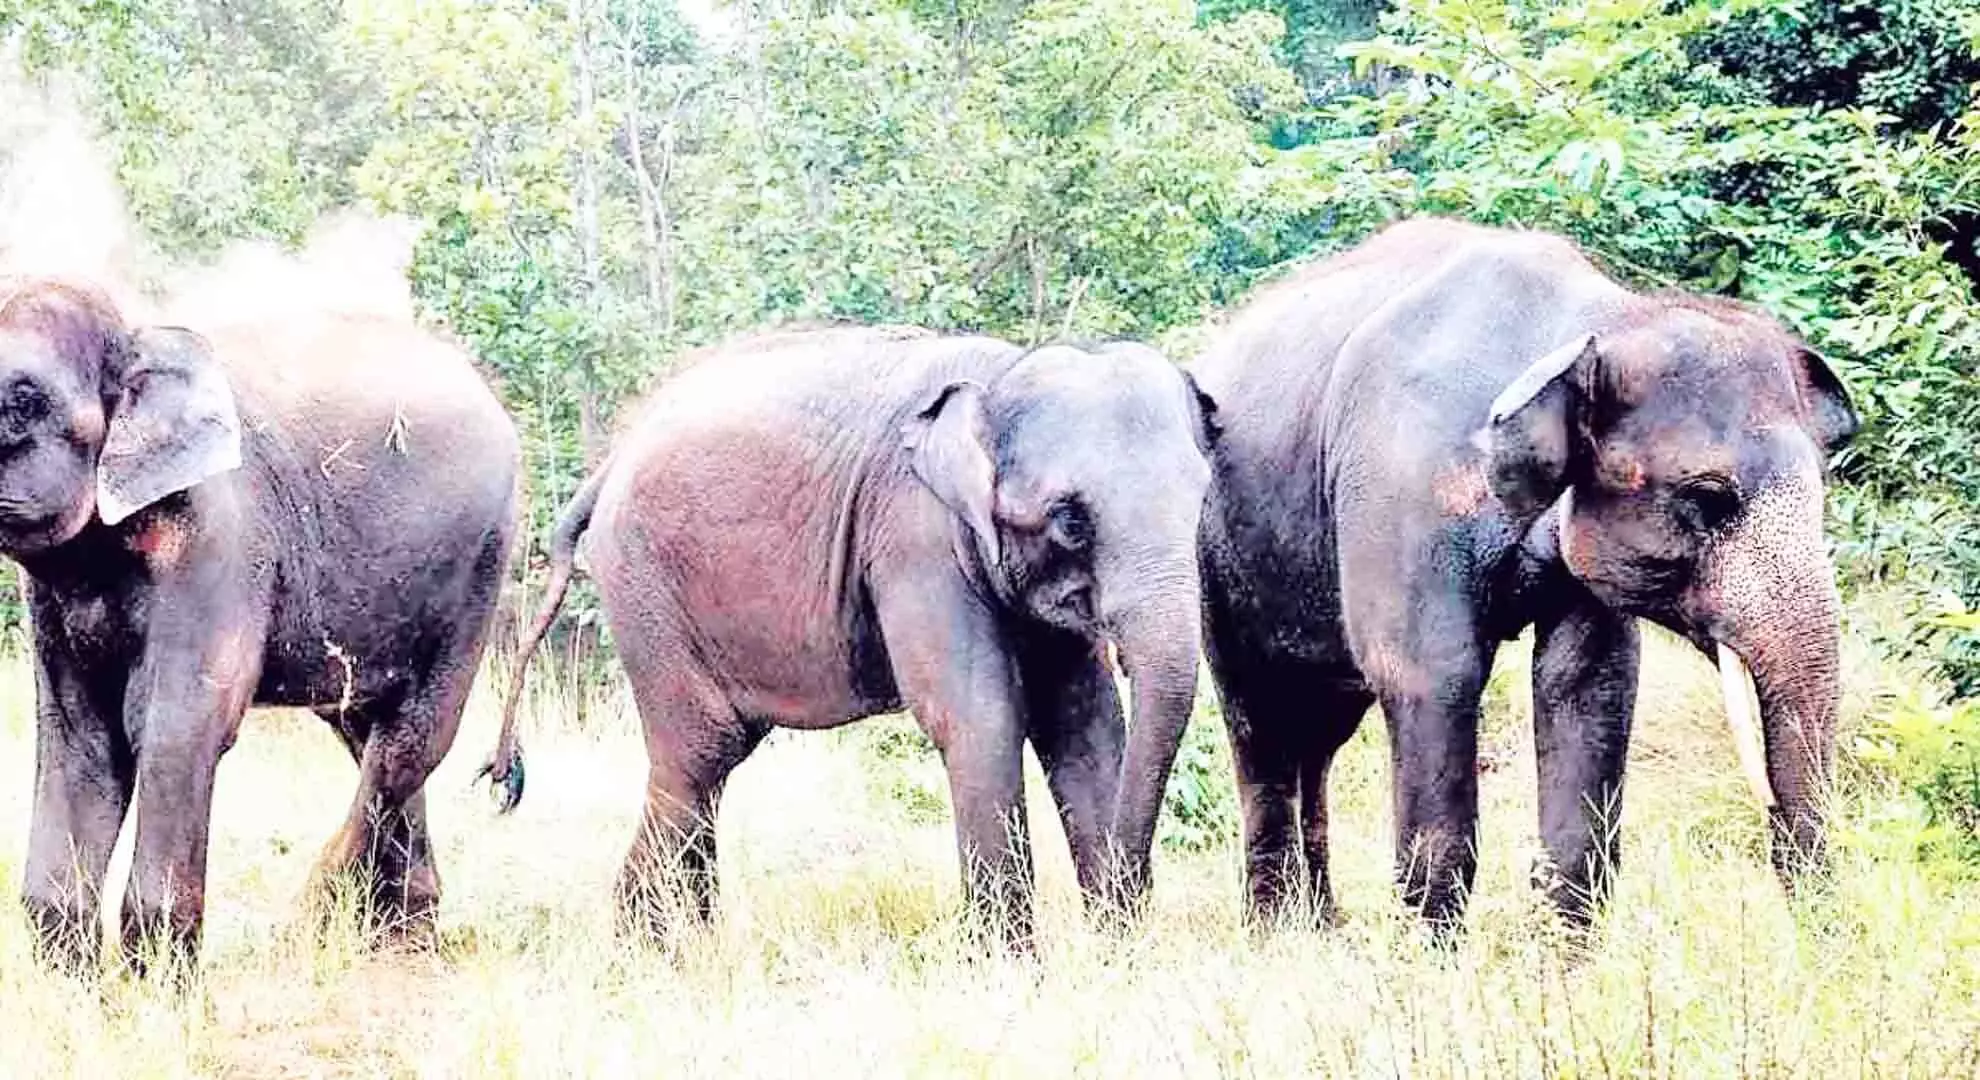 तमिलनाडु के नीलगिरी जिले में जंगली हाथियों ने दो लोगों को मार डाला